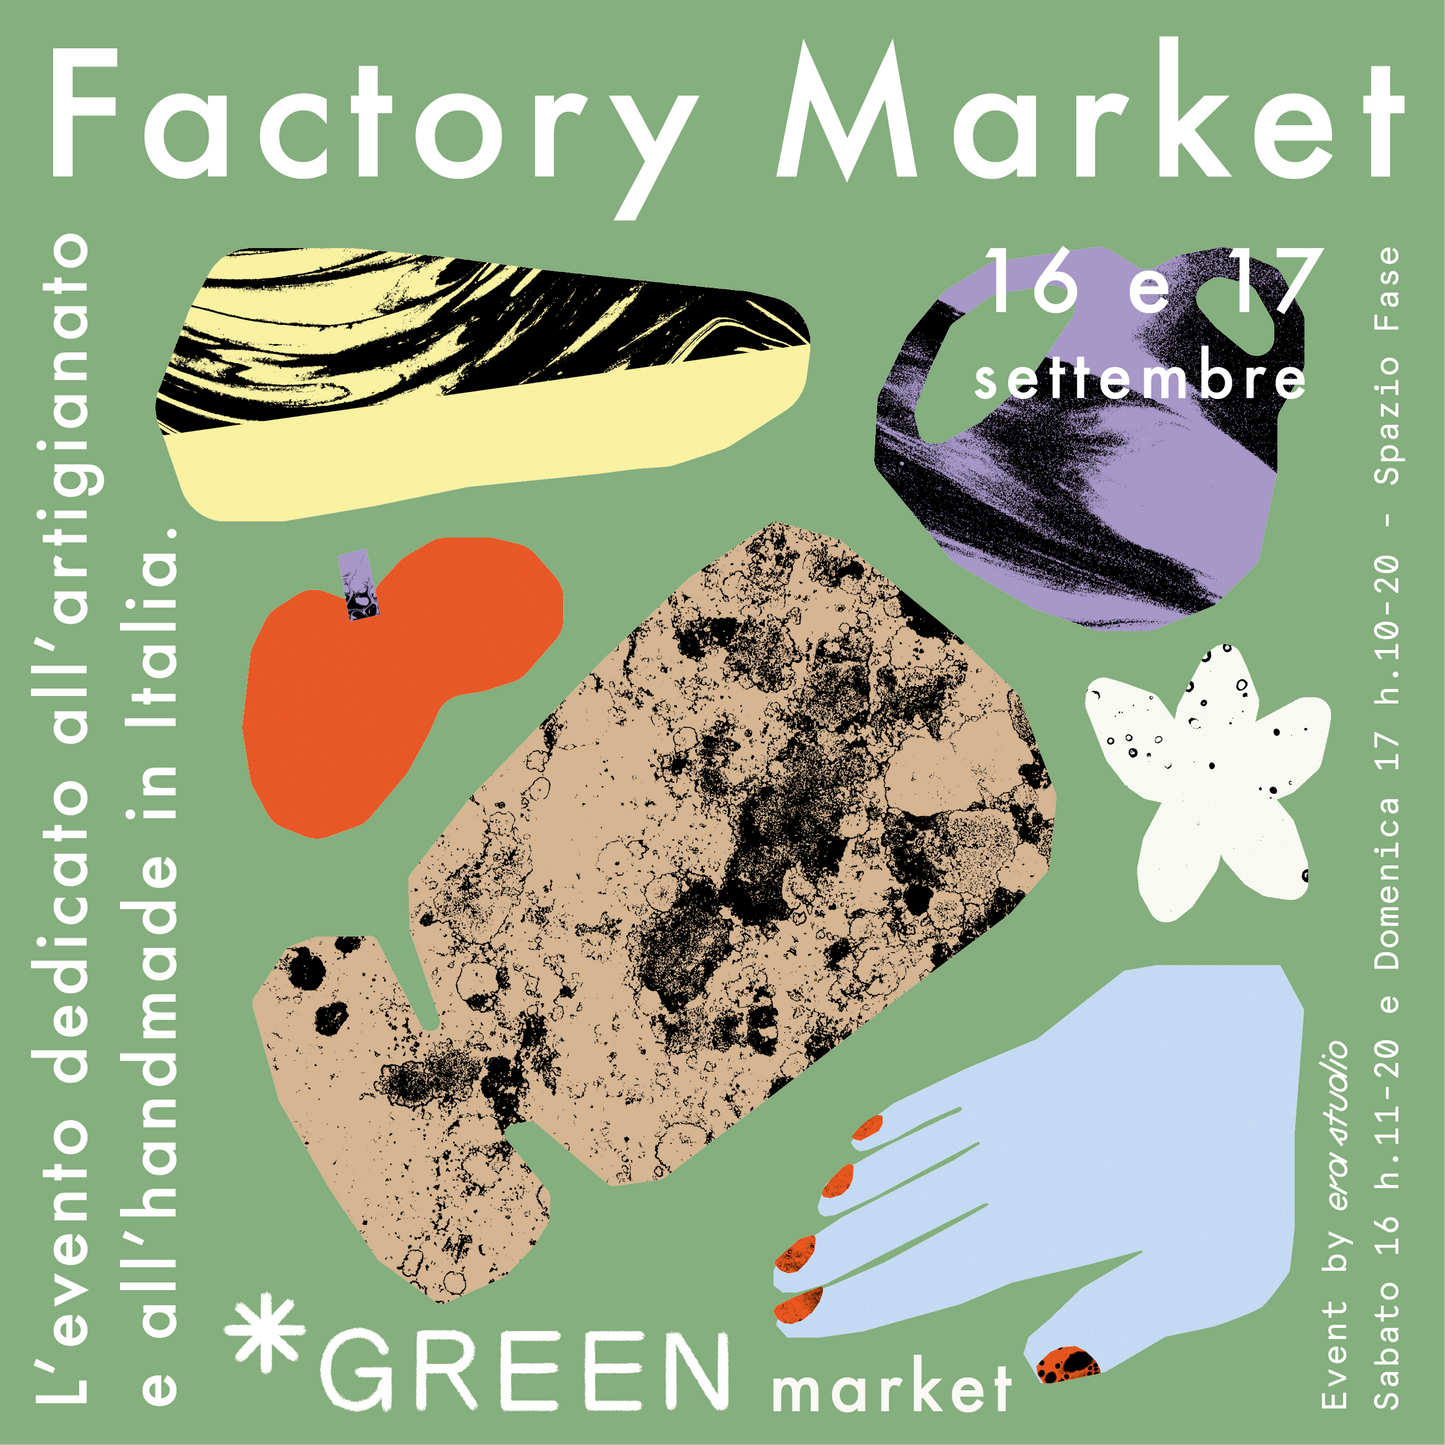 Factory market green